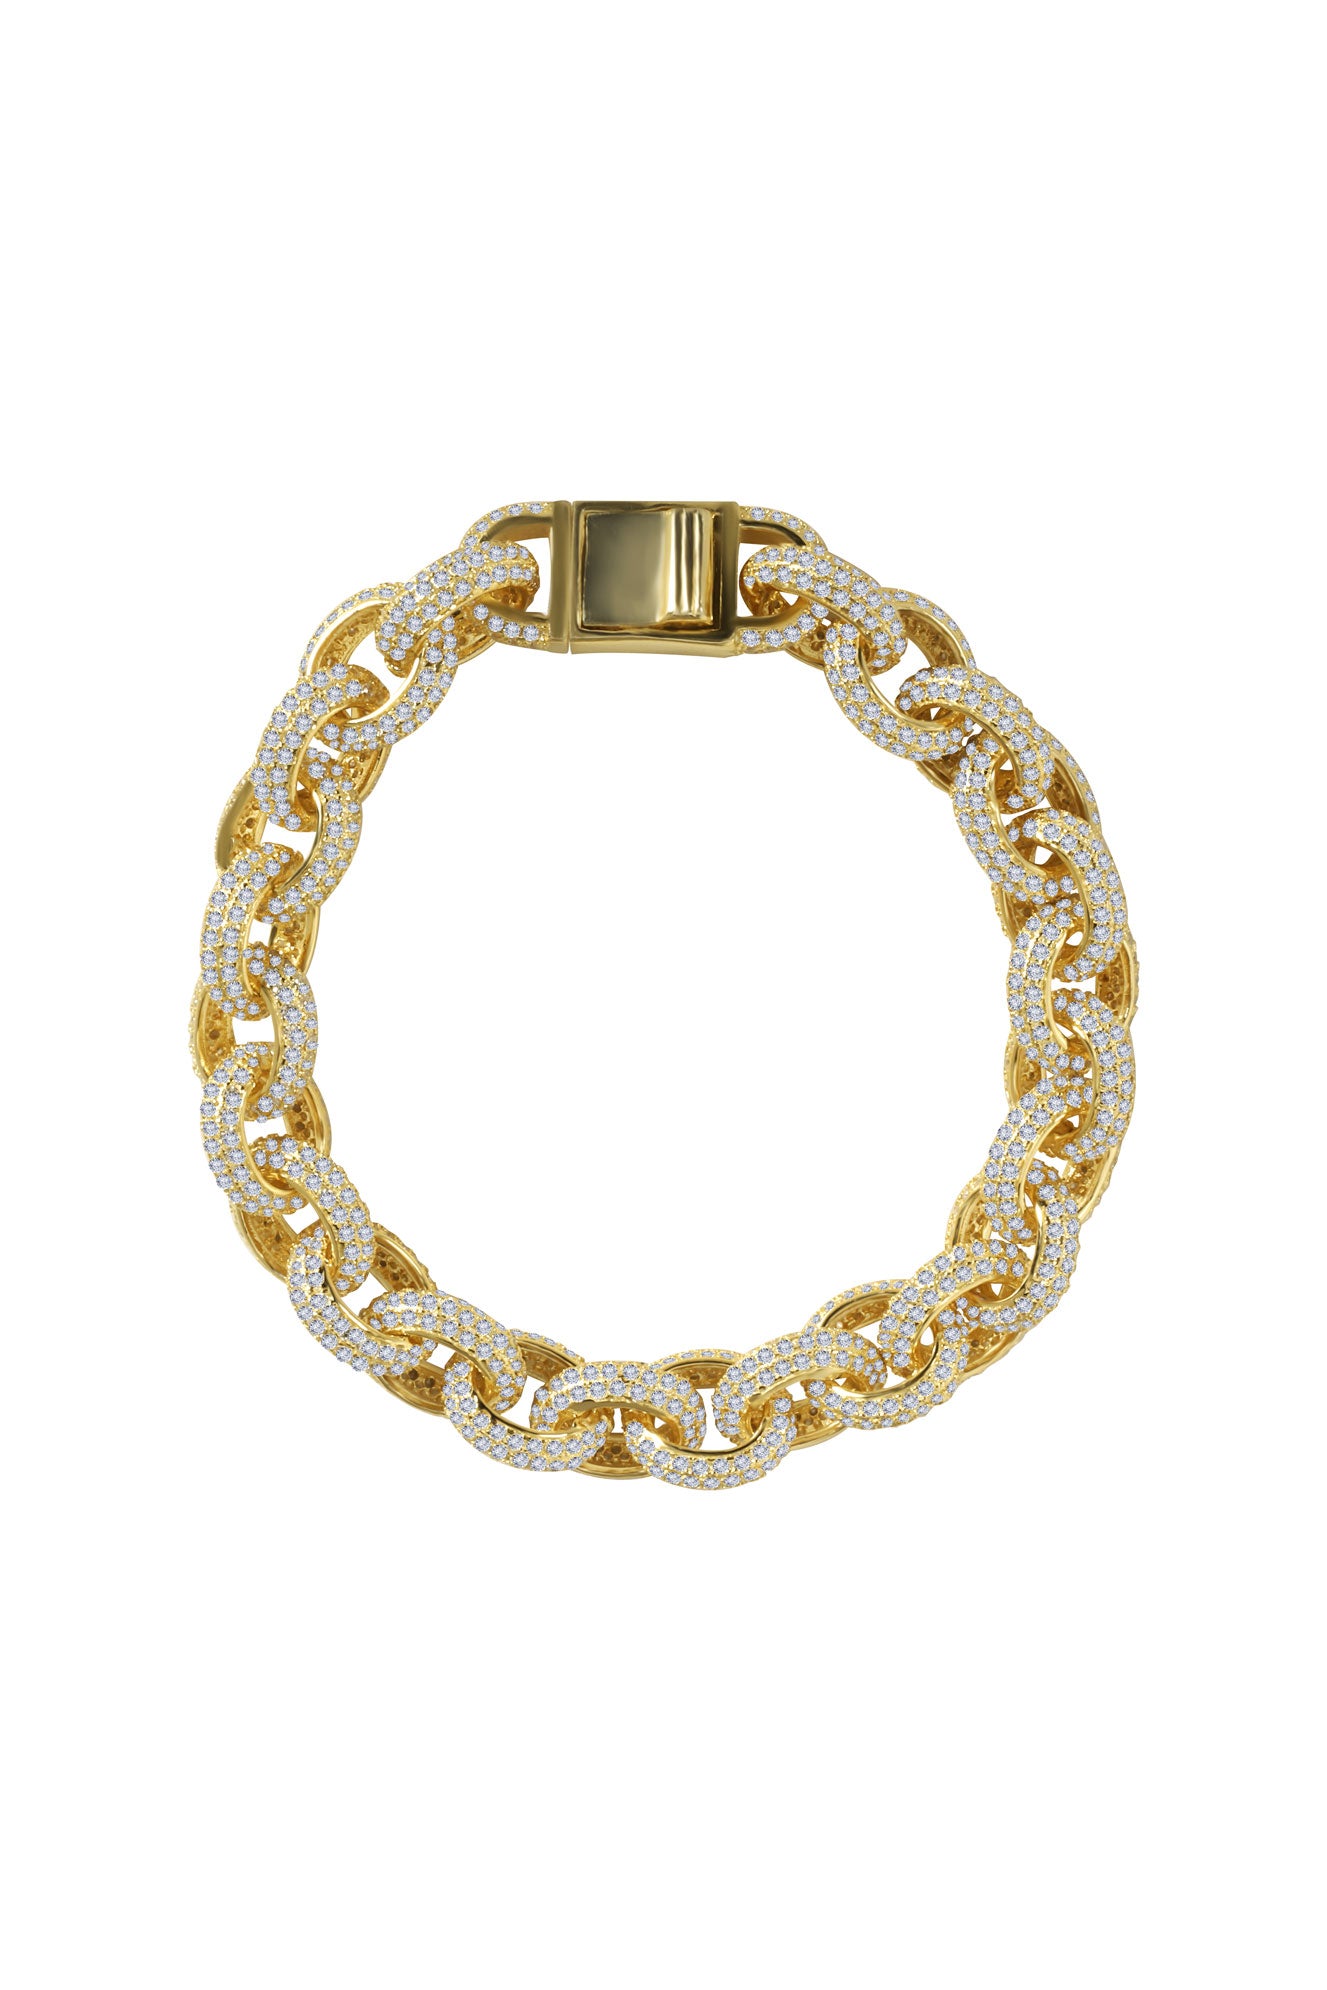 Golden Hermes Link Bracelet (30% OFF)